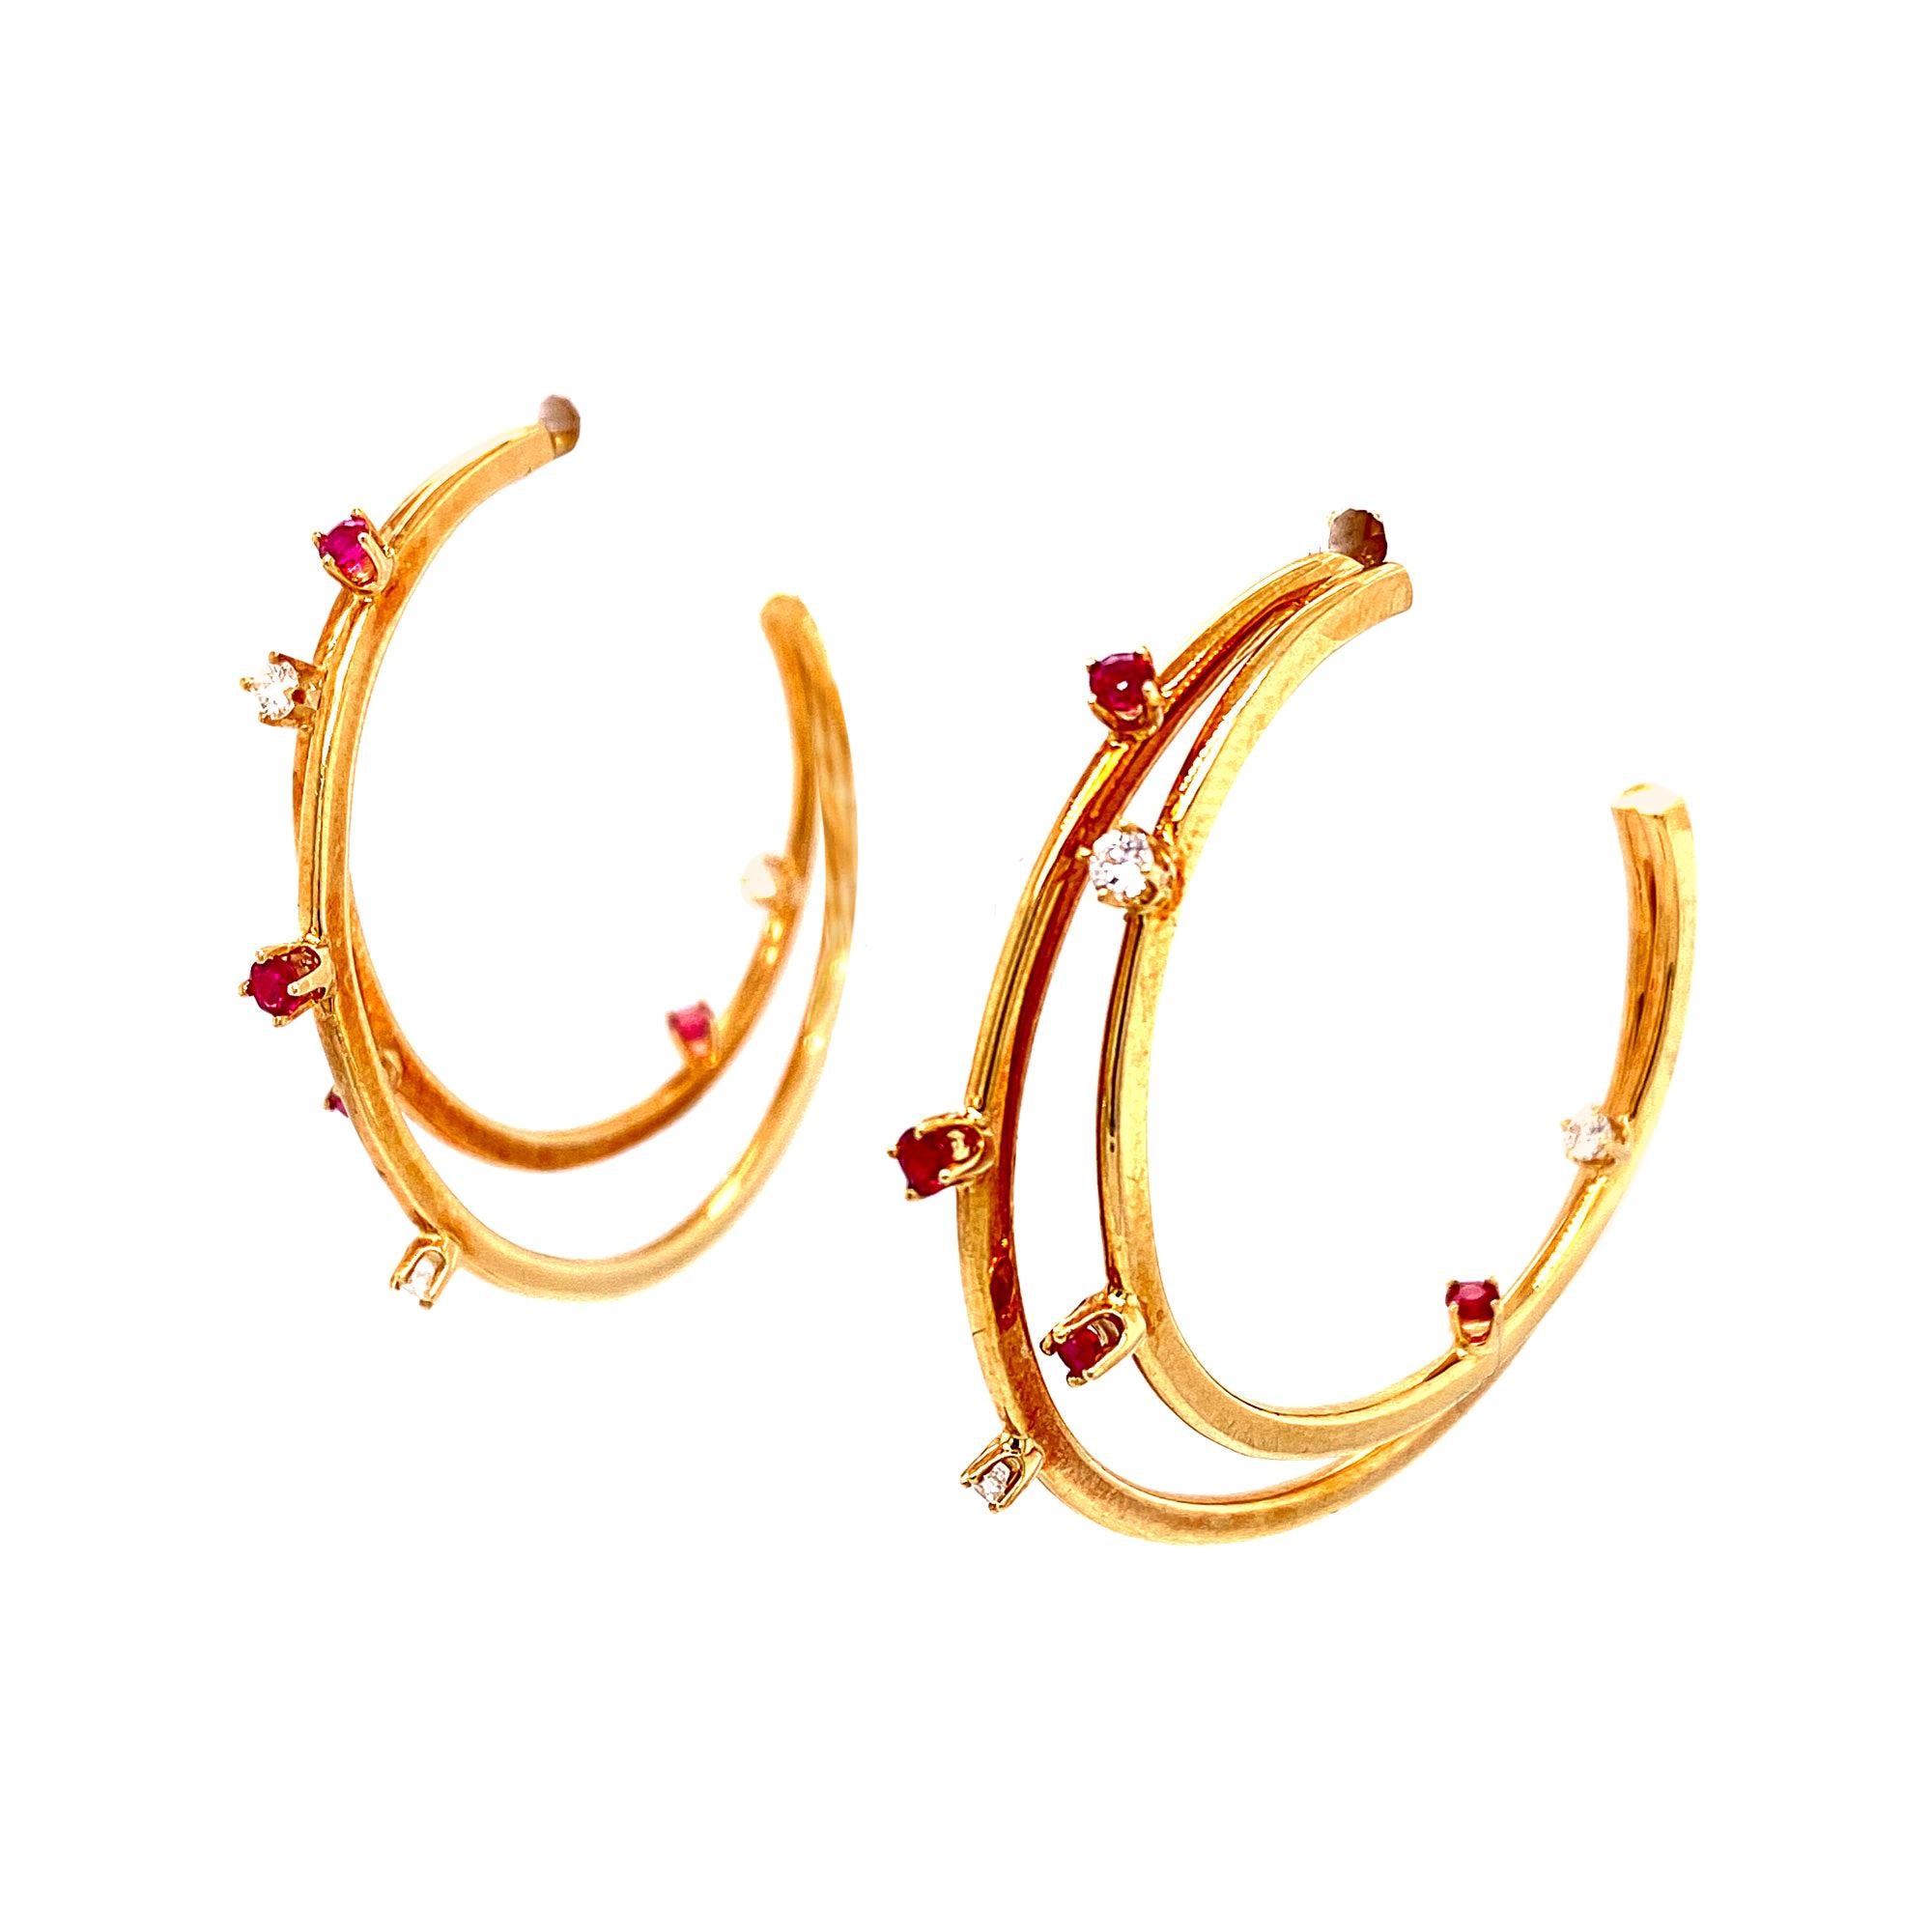 Tiffany & Co. Vintage Diamond Ruby Double Hoop Earrings 18 Karat Yellow Gold